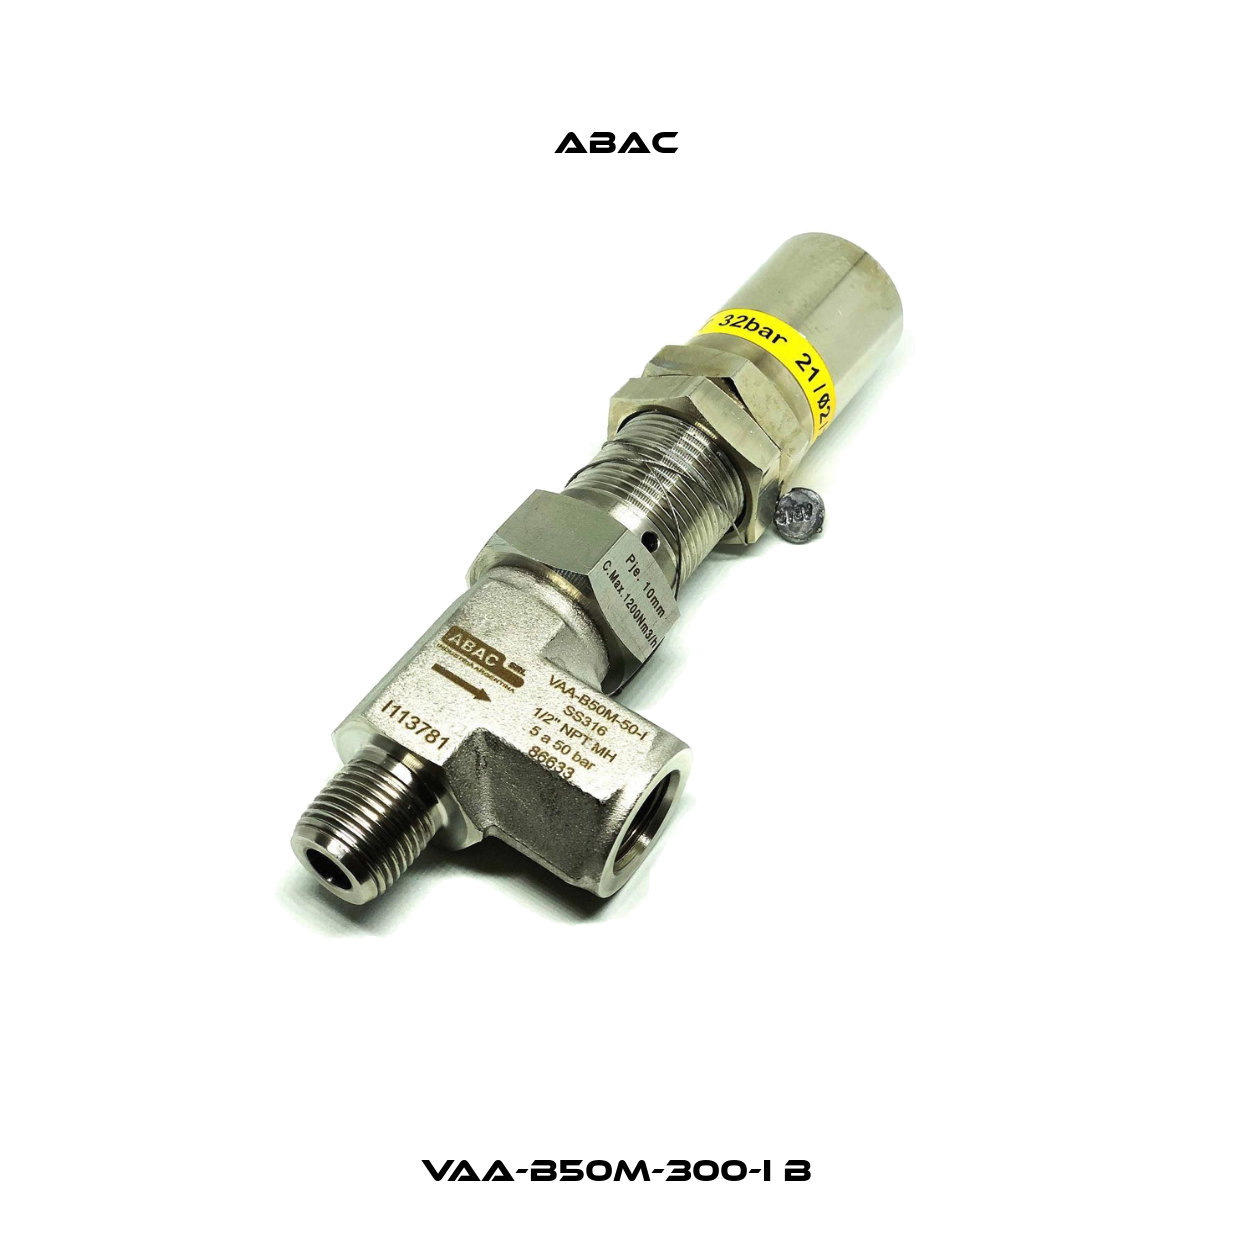 VAA-B50M-300-I B ABAC